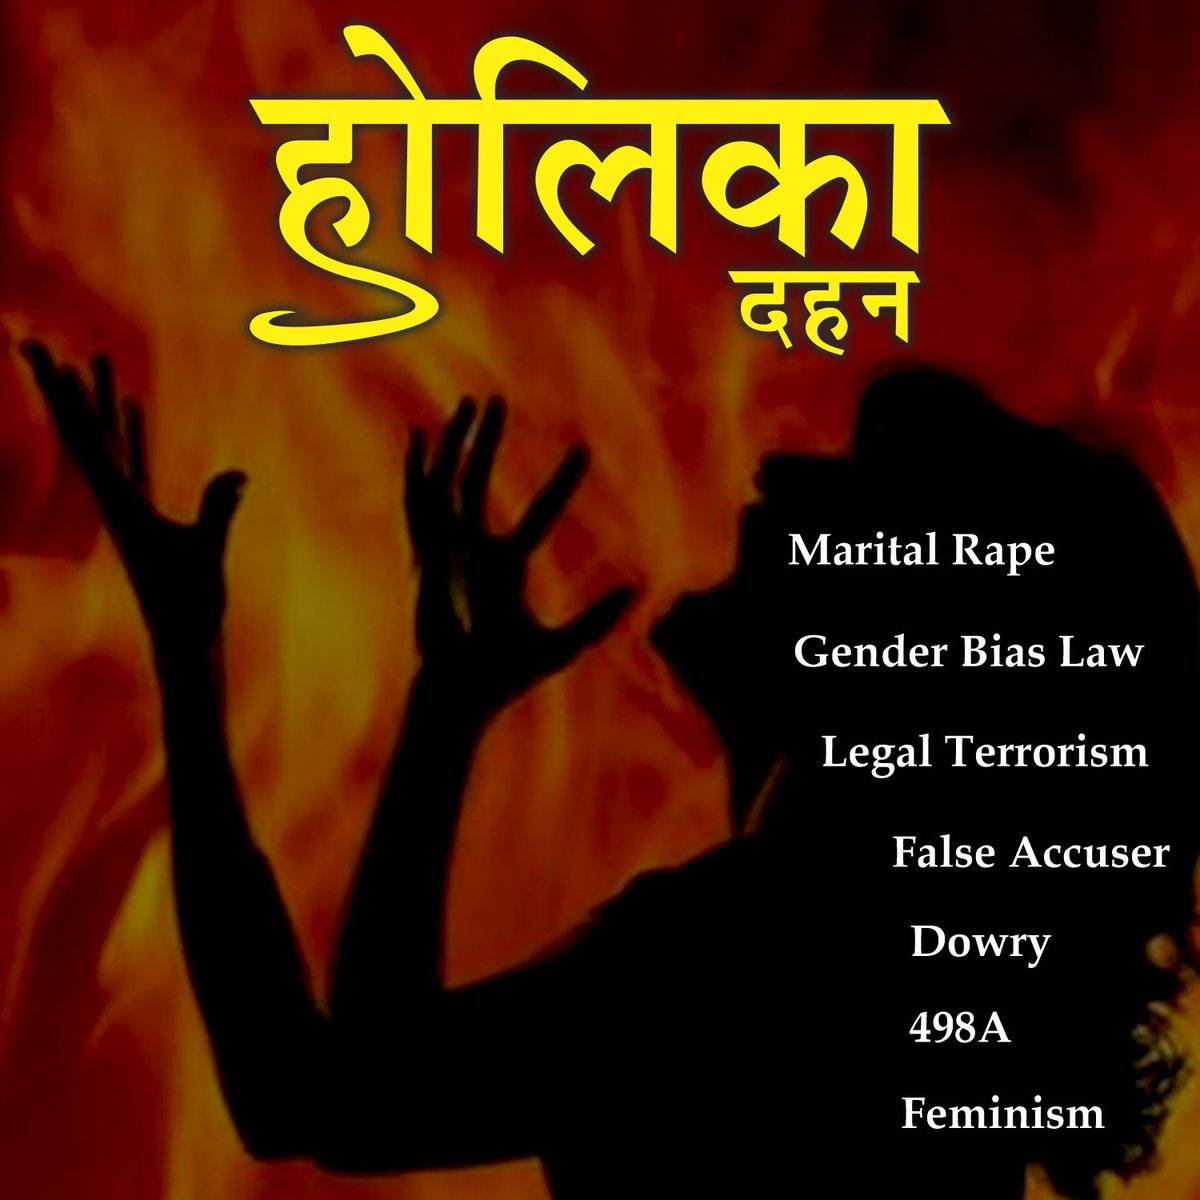 आज ऐसी सभी महिलाओं को जला देना चाहिए जो पुरुषों पर झूठे आरोप लगाकर पुरुषों का शोषण करती है...

#HolikaDehan #Burnbadsoul #MaritalRape #Dowry #Feminism #GenderBiasLaw #LegalTerrorism #FalseAccuser #498A #FakeFIR